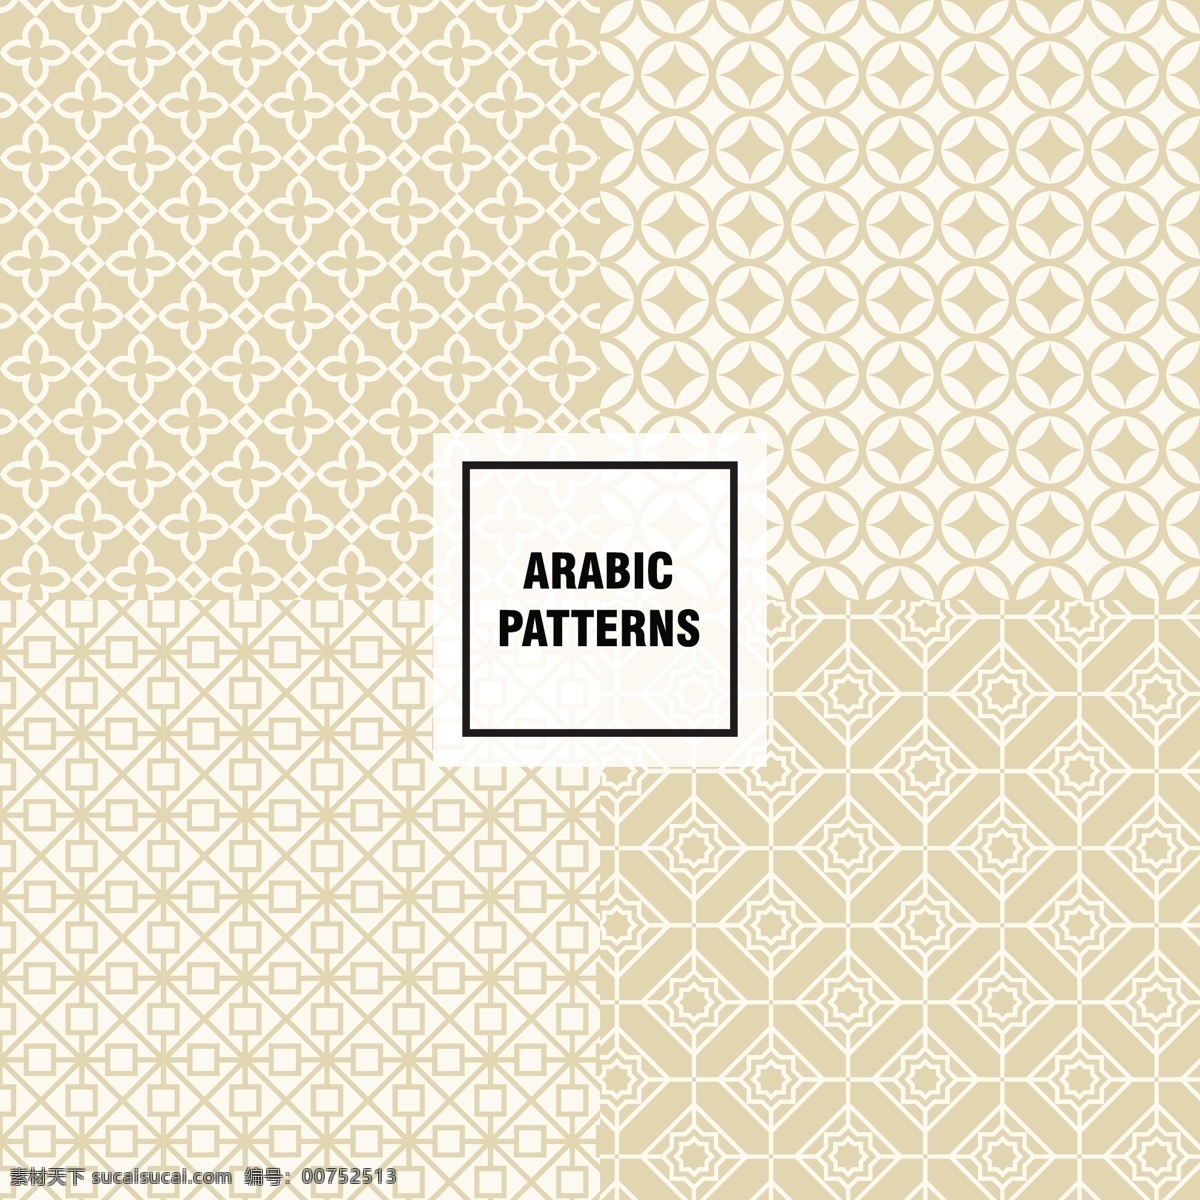 阿拉伯 图案 背景 阿拉伯图案 装饰 墙纸 印花 服装 卡通图案 白色